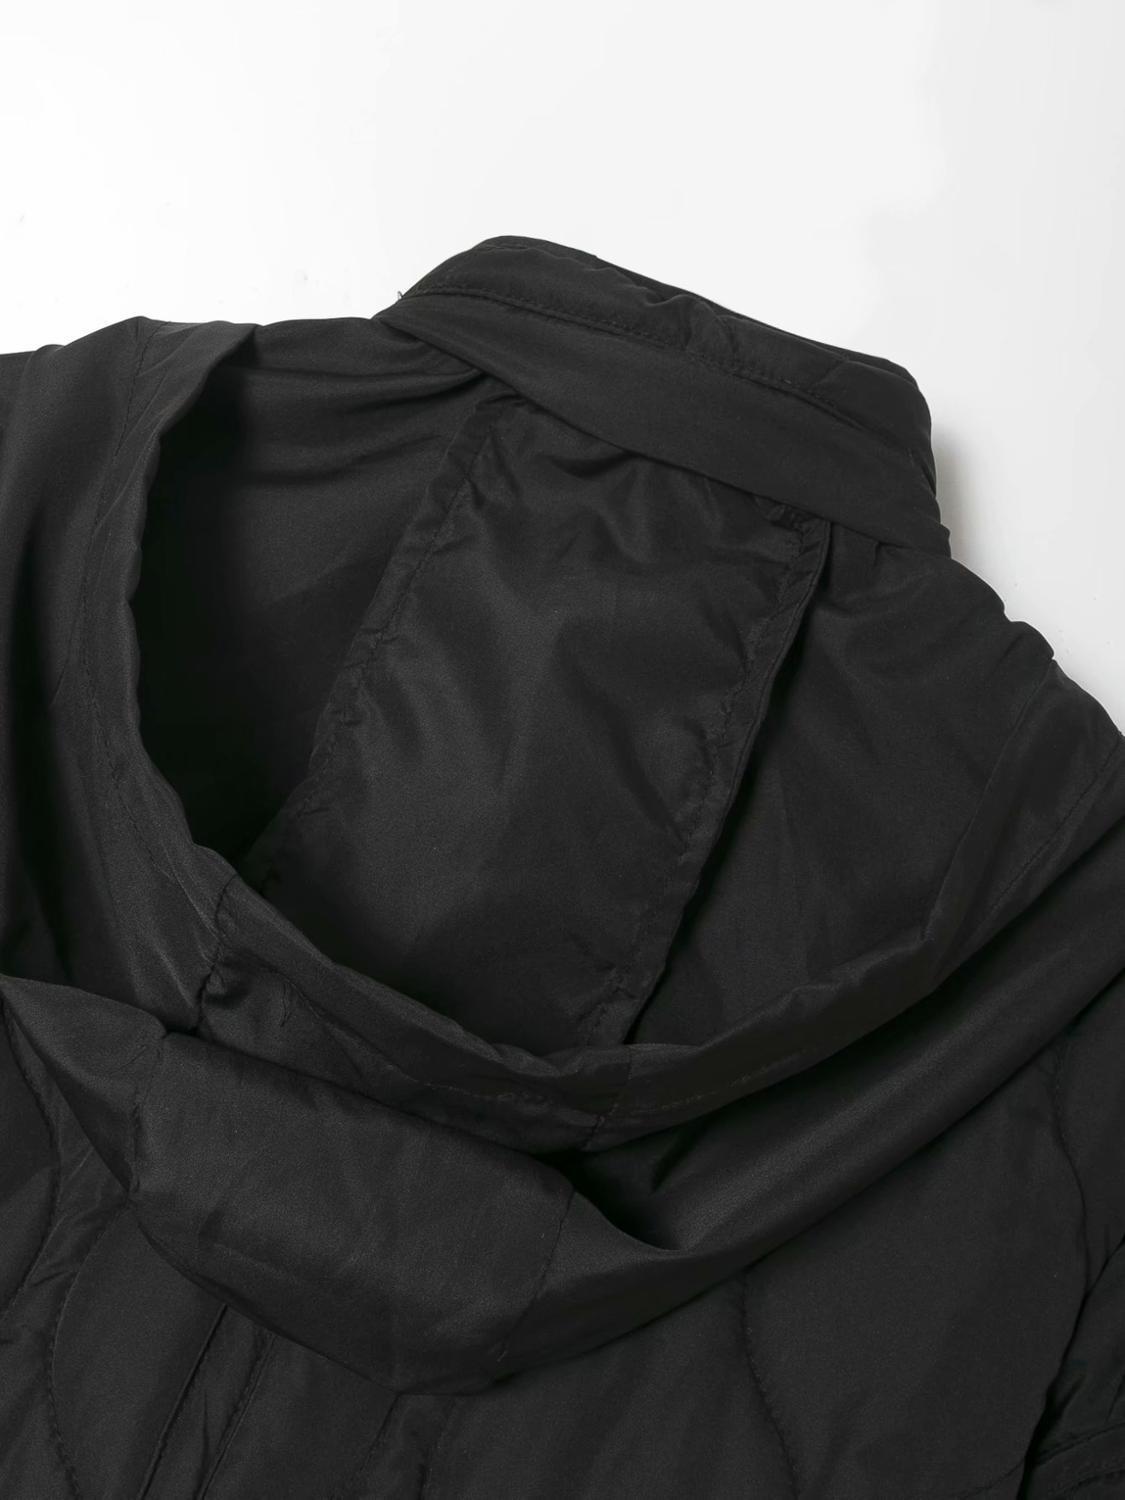 Изображение товара: Куртка женская оверсайз с капюшоном, однотонная тонкая хлопковая верхняя одежда с длинным рукавом, черная стеганая верхняя одежда, осень-зима 2020